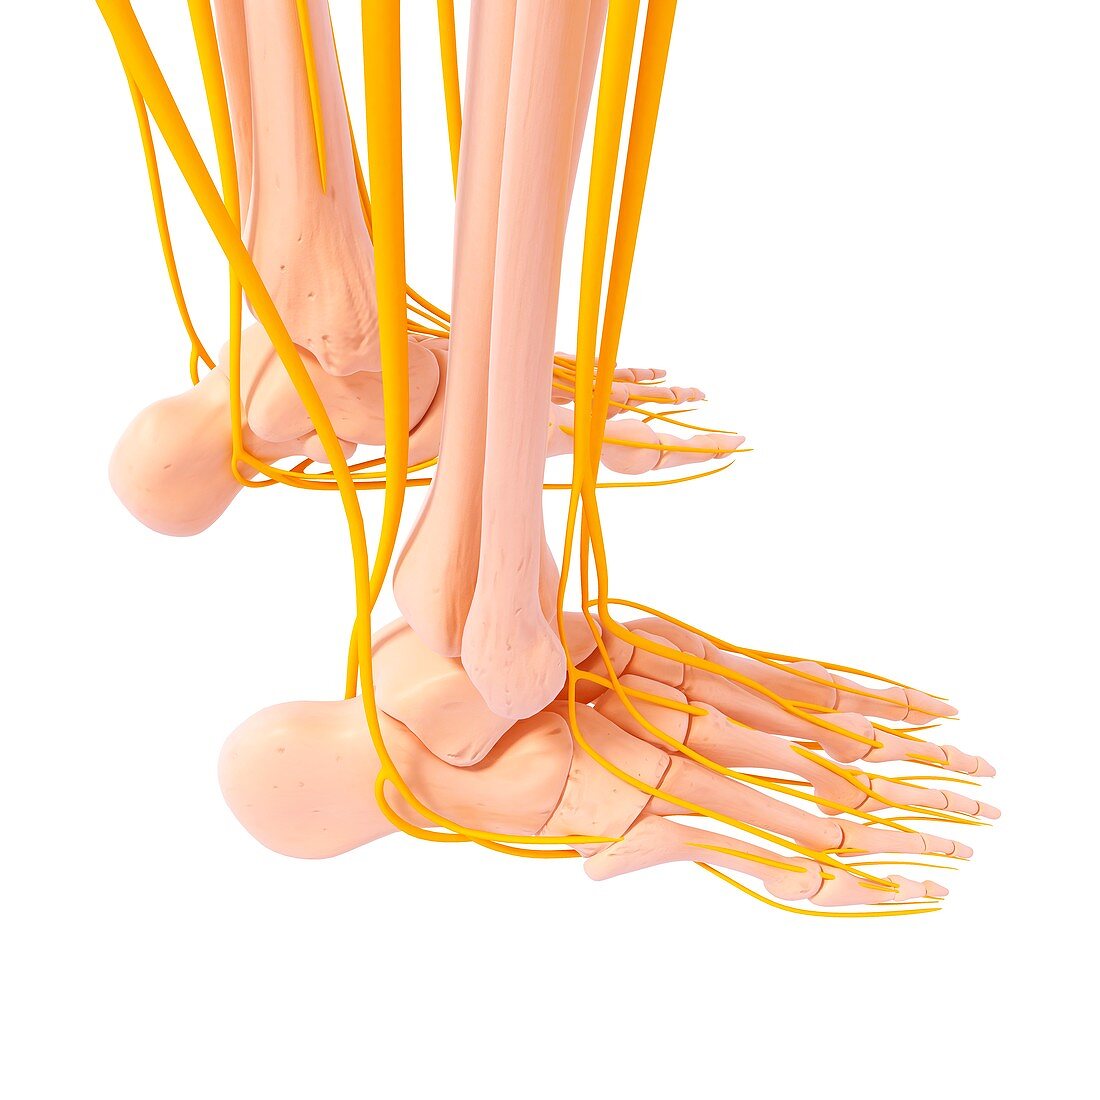 Human foot nervous system,artwork